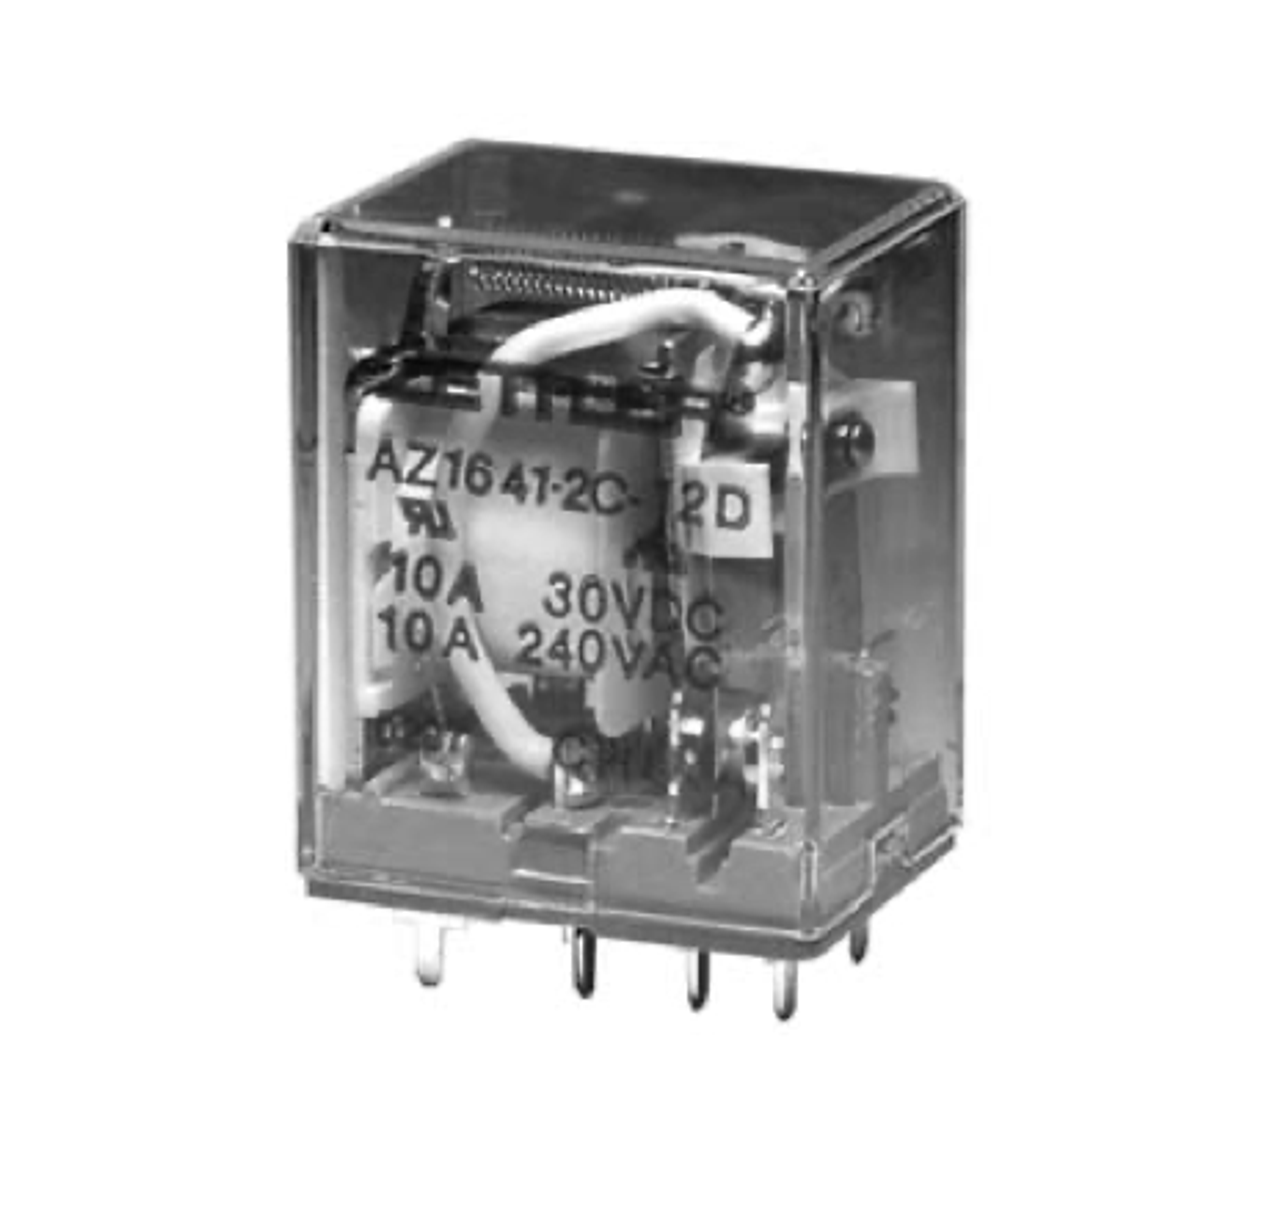 American Zettler AZ1641-1CT-240A Power Relay